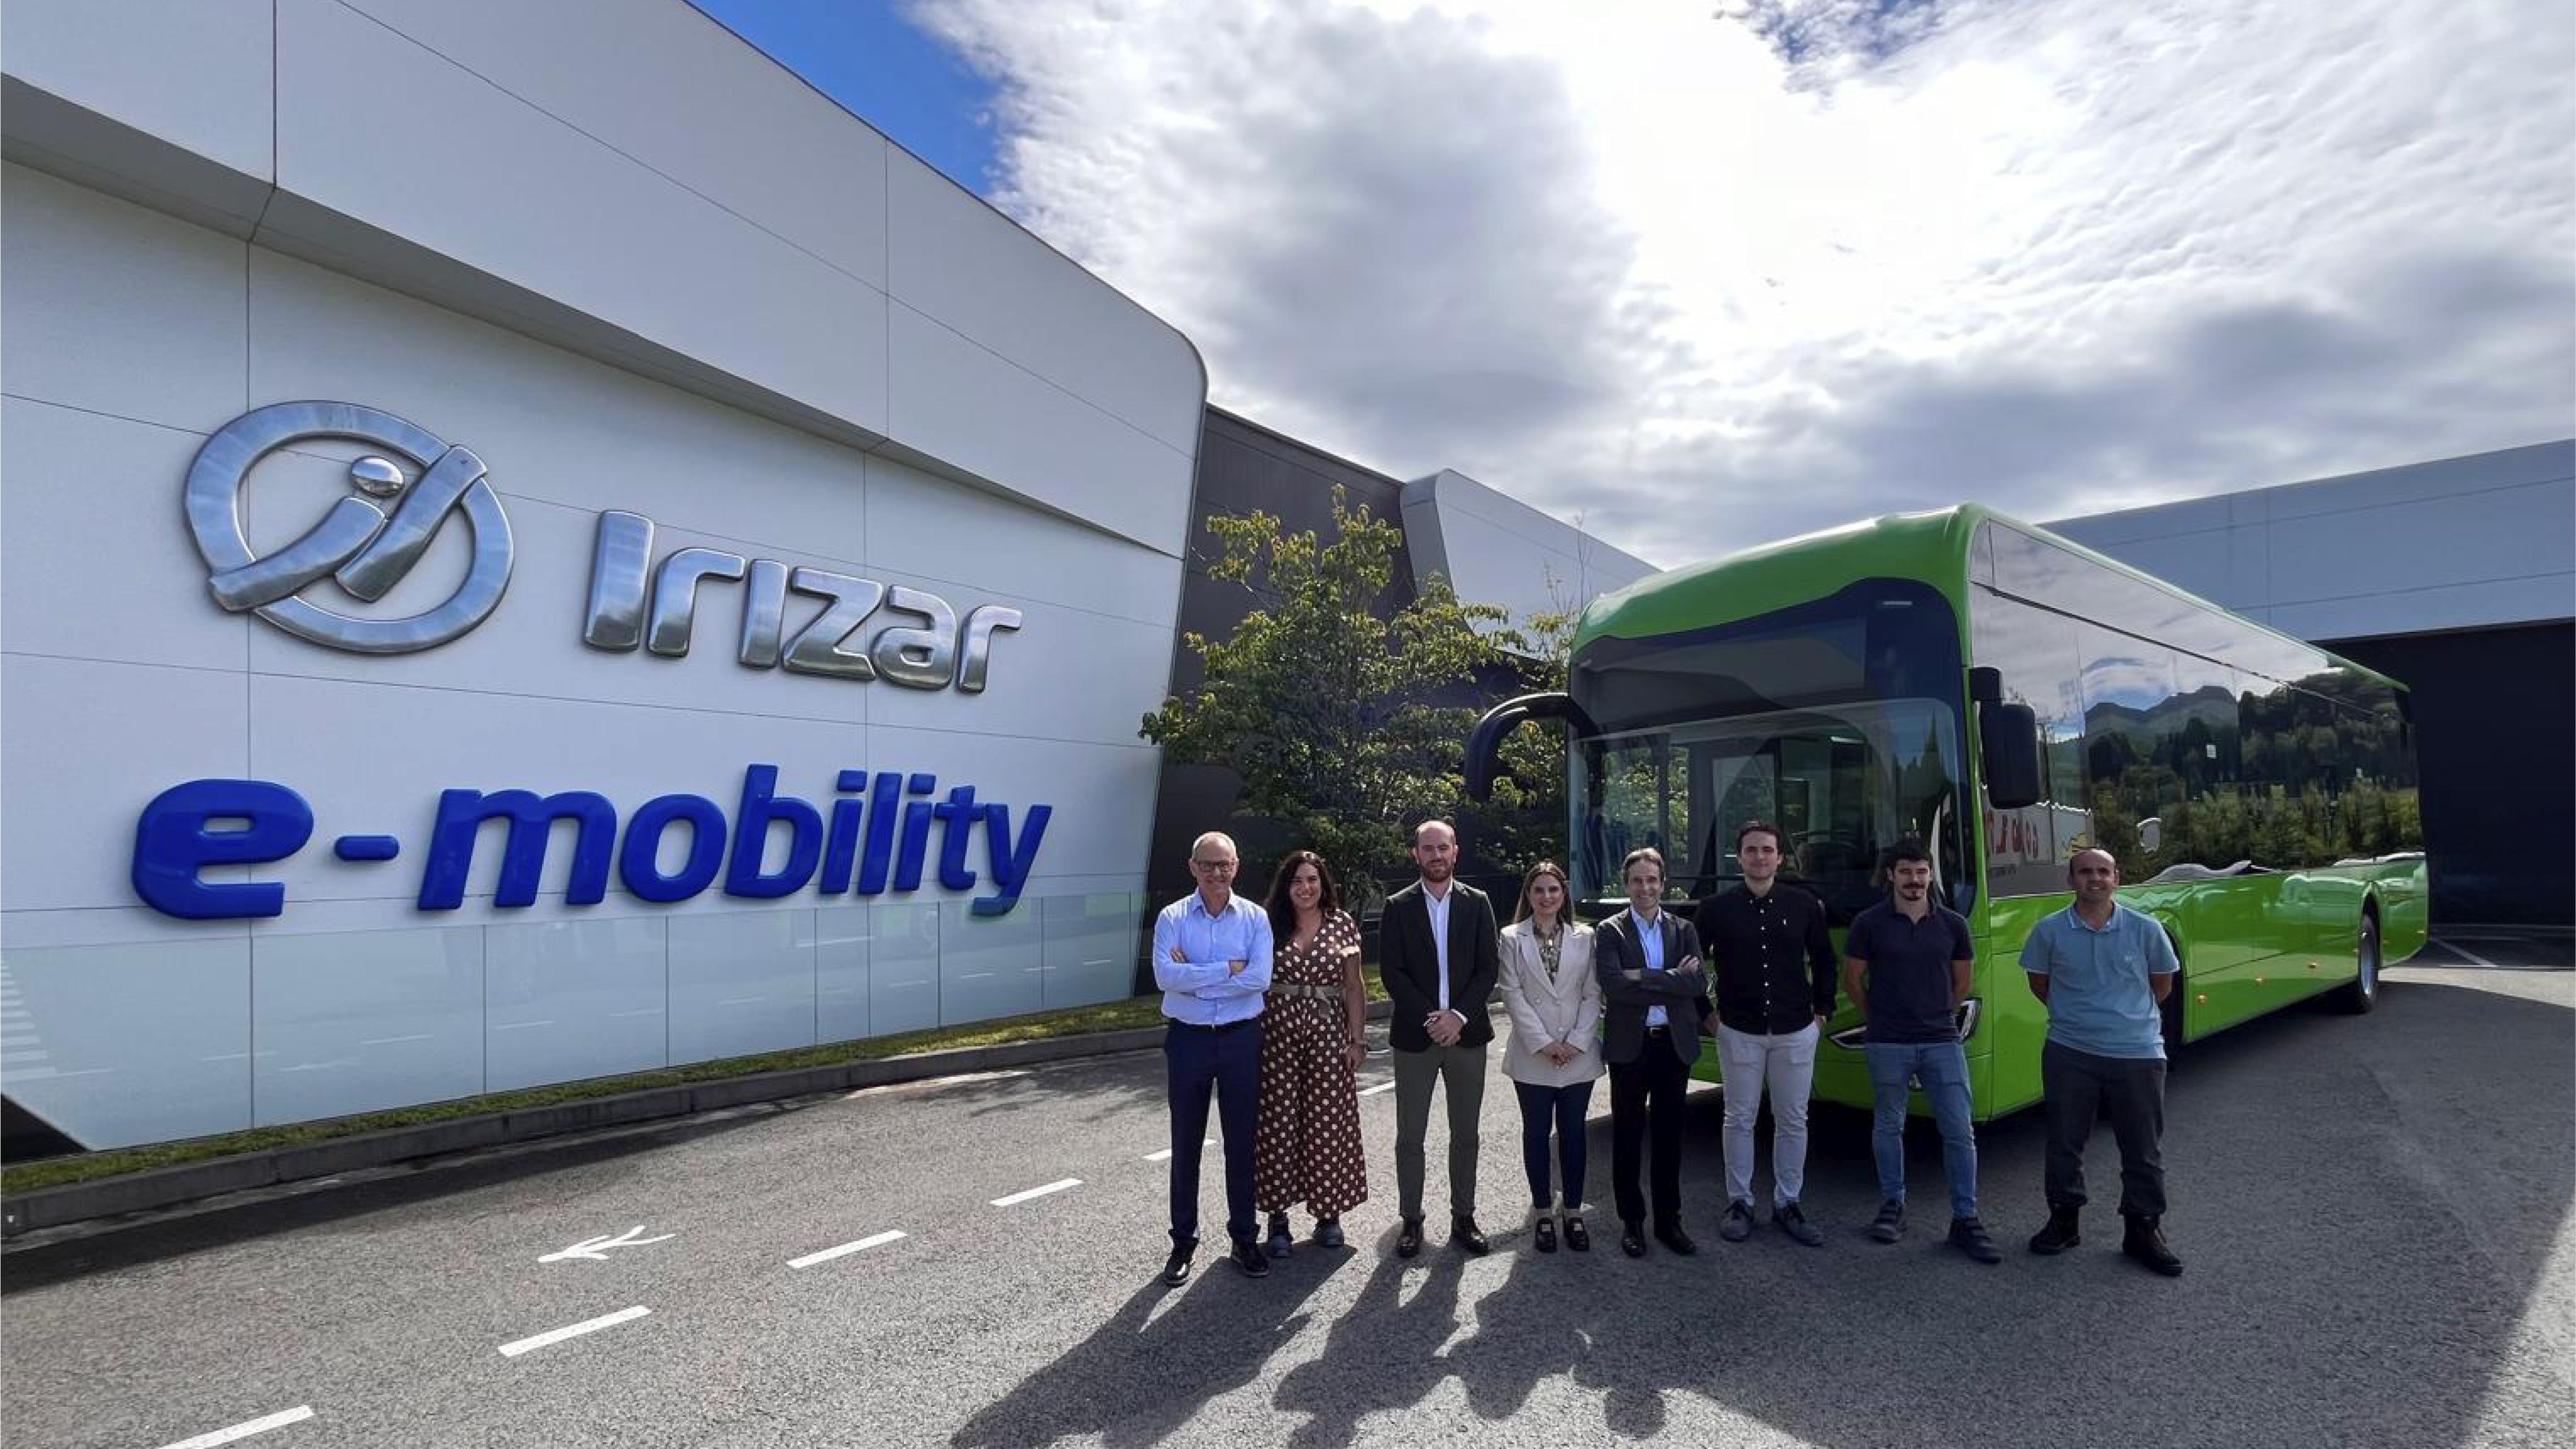 Veintiocho nuevos autobuses de Irizar e-mobility para la Región de Murcia